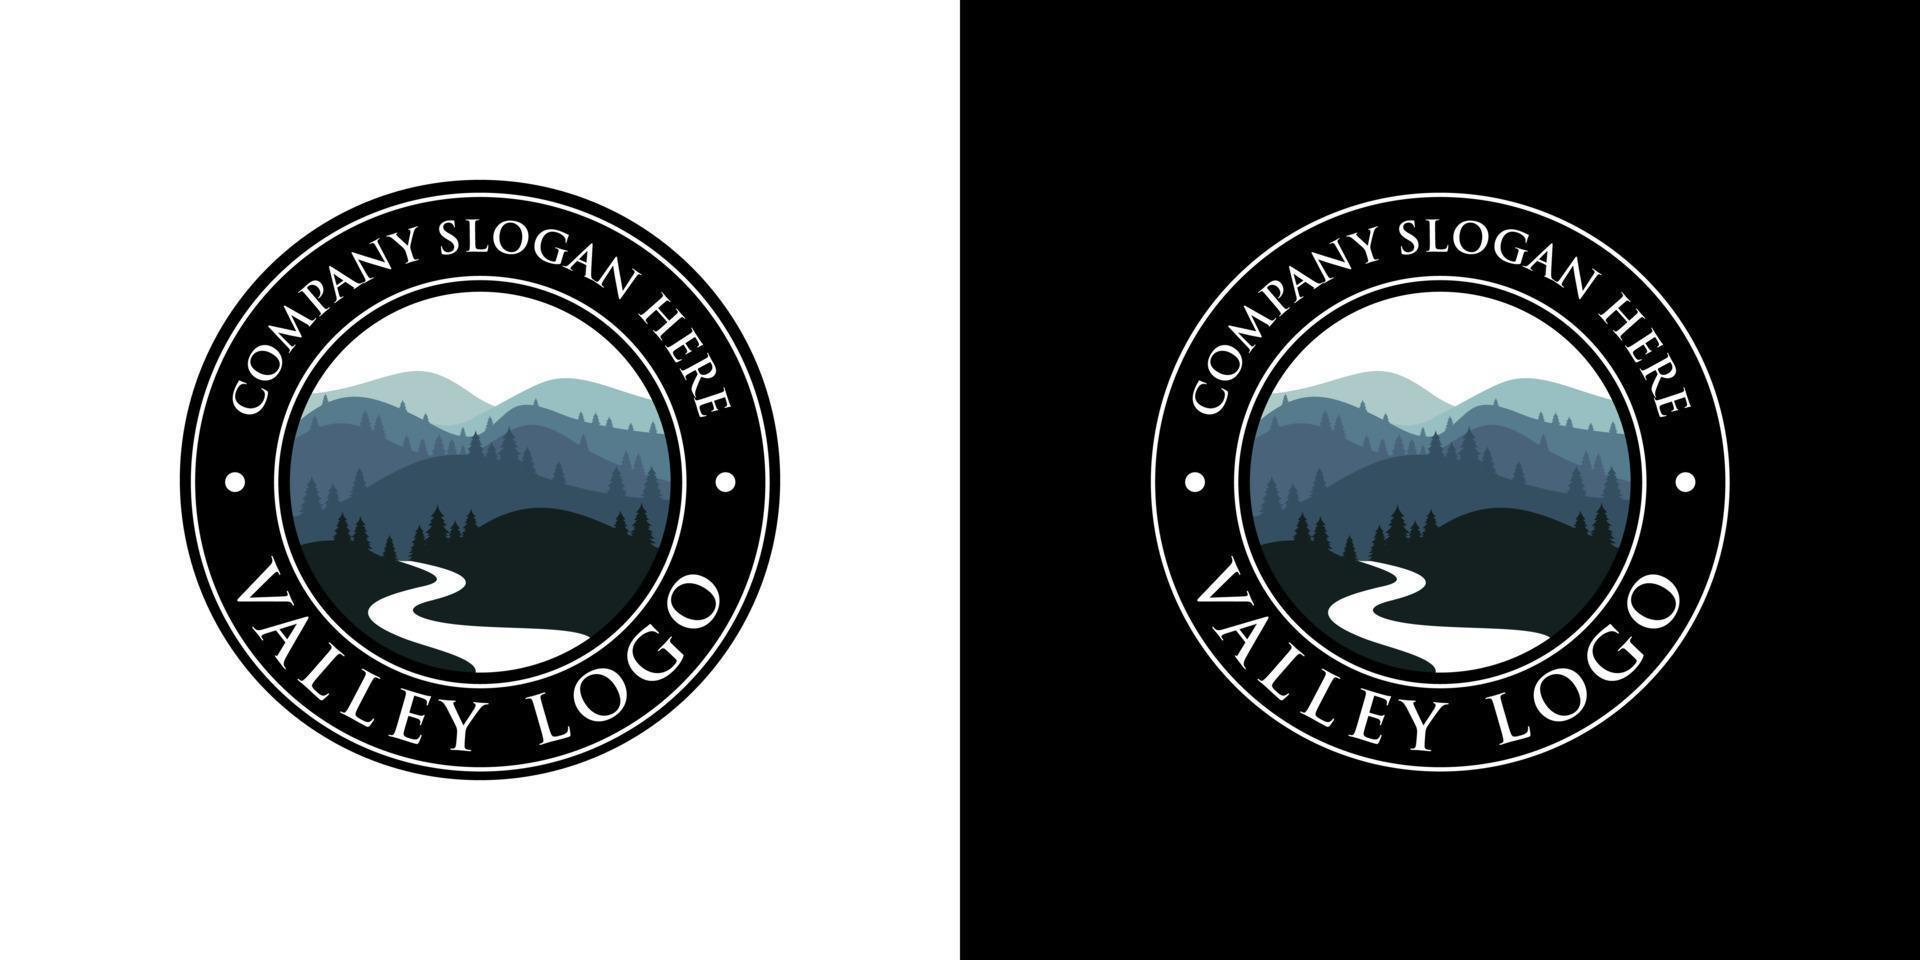 Valley Logo Design Vector Template